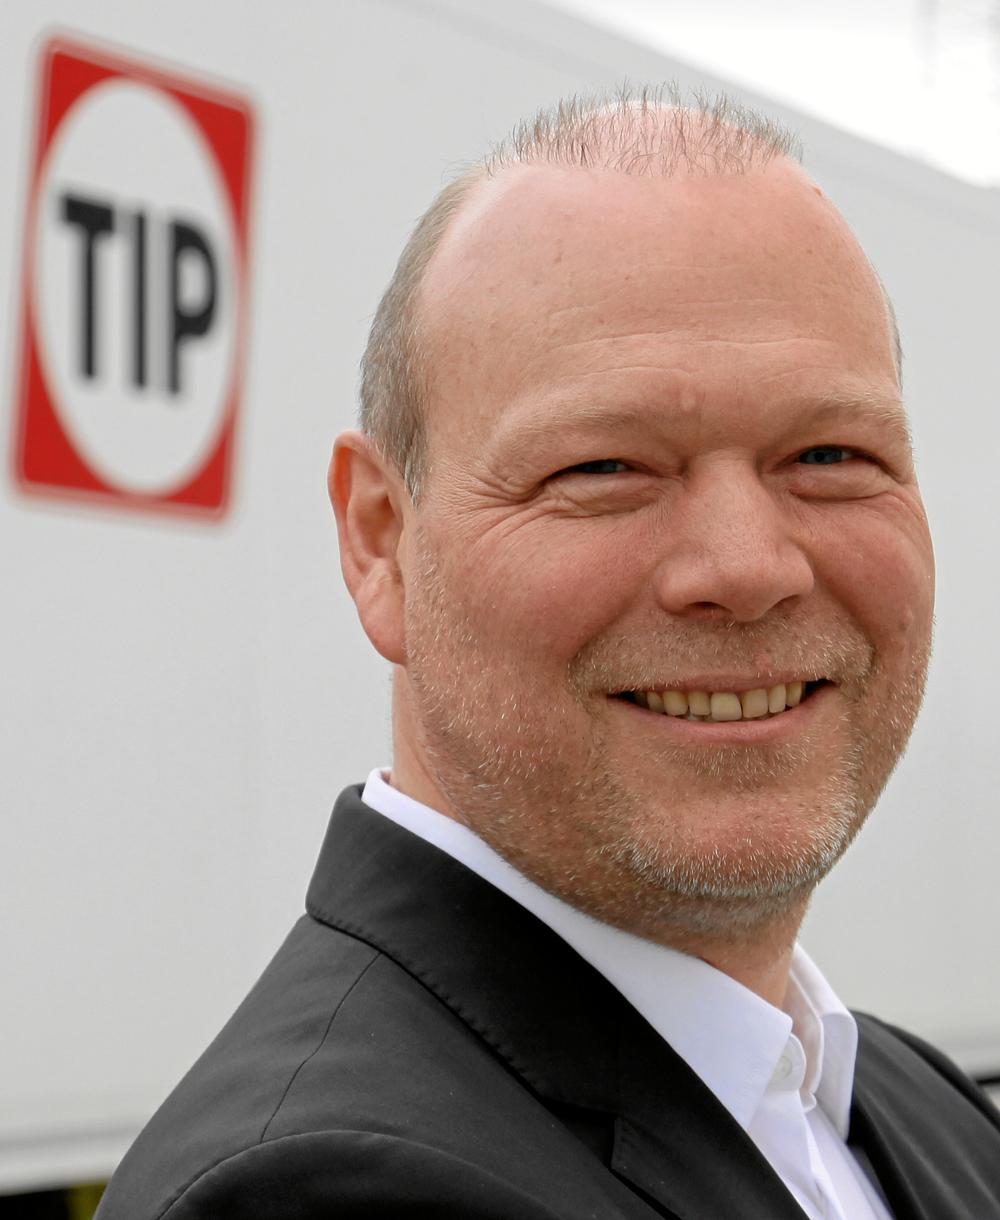 – Vi är otroligt glada över att kunna välkomna de många nya kunderna till TIP, säger Christian Petersen, Vice President & Managing Director på TIP Nordic.